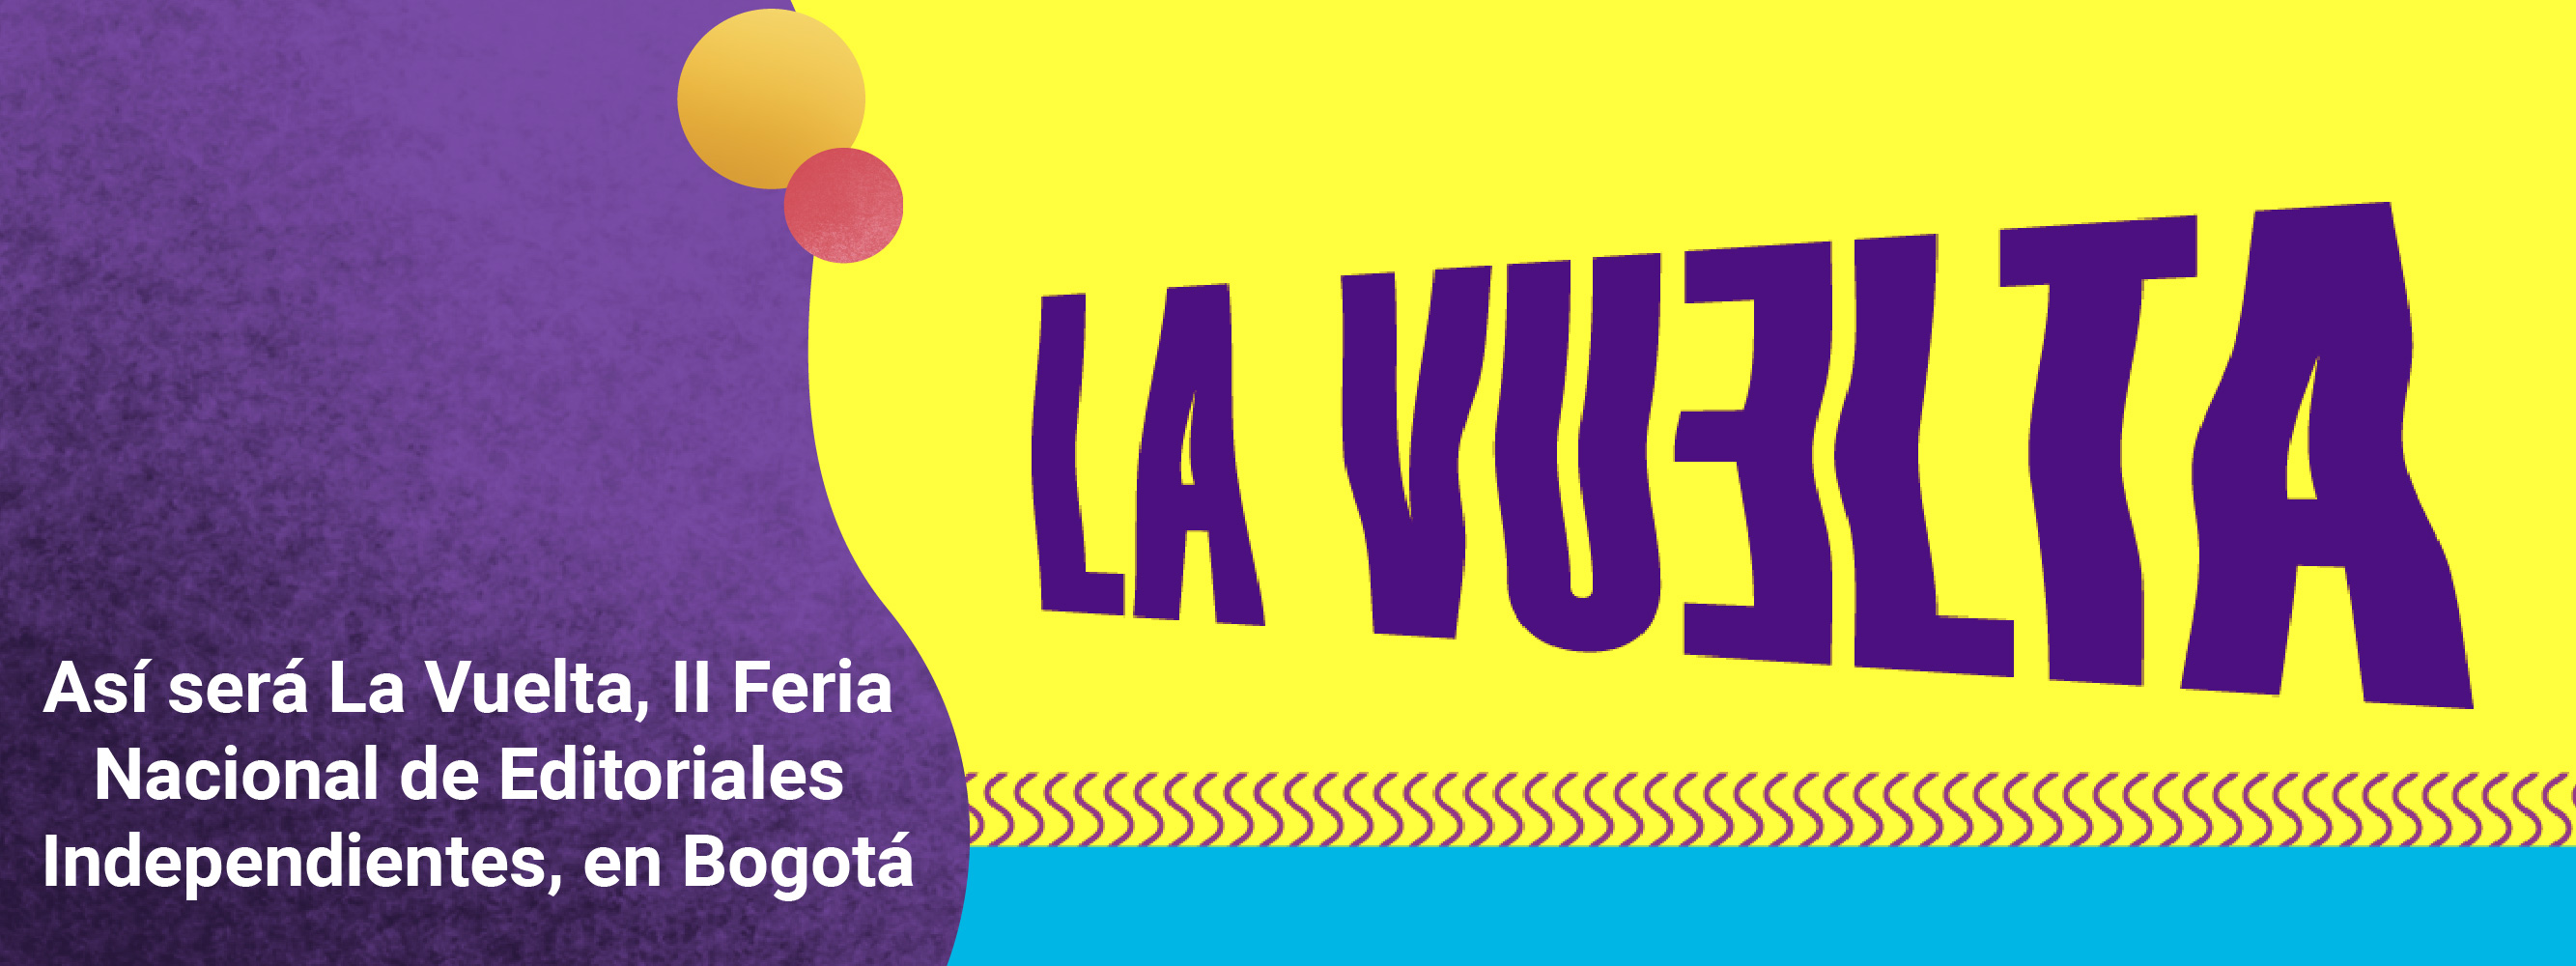 Así será La Vuelta, II Feria Nacional de Editoriales Independientes, en Bogotá